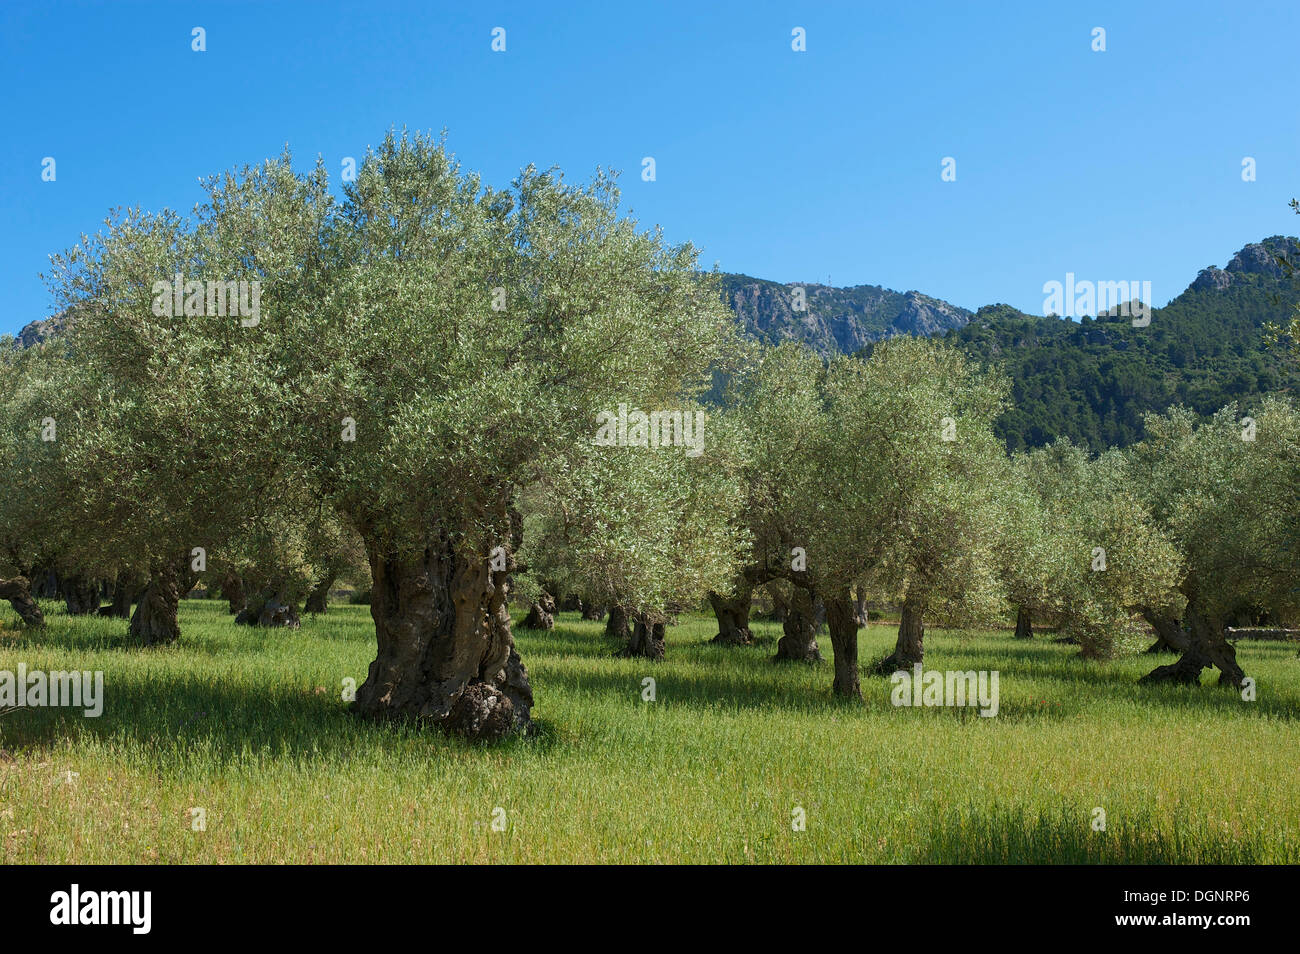 Old Olive trees (Olea europaea), Majorca, Balearic Islands, Spain Stock Photo